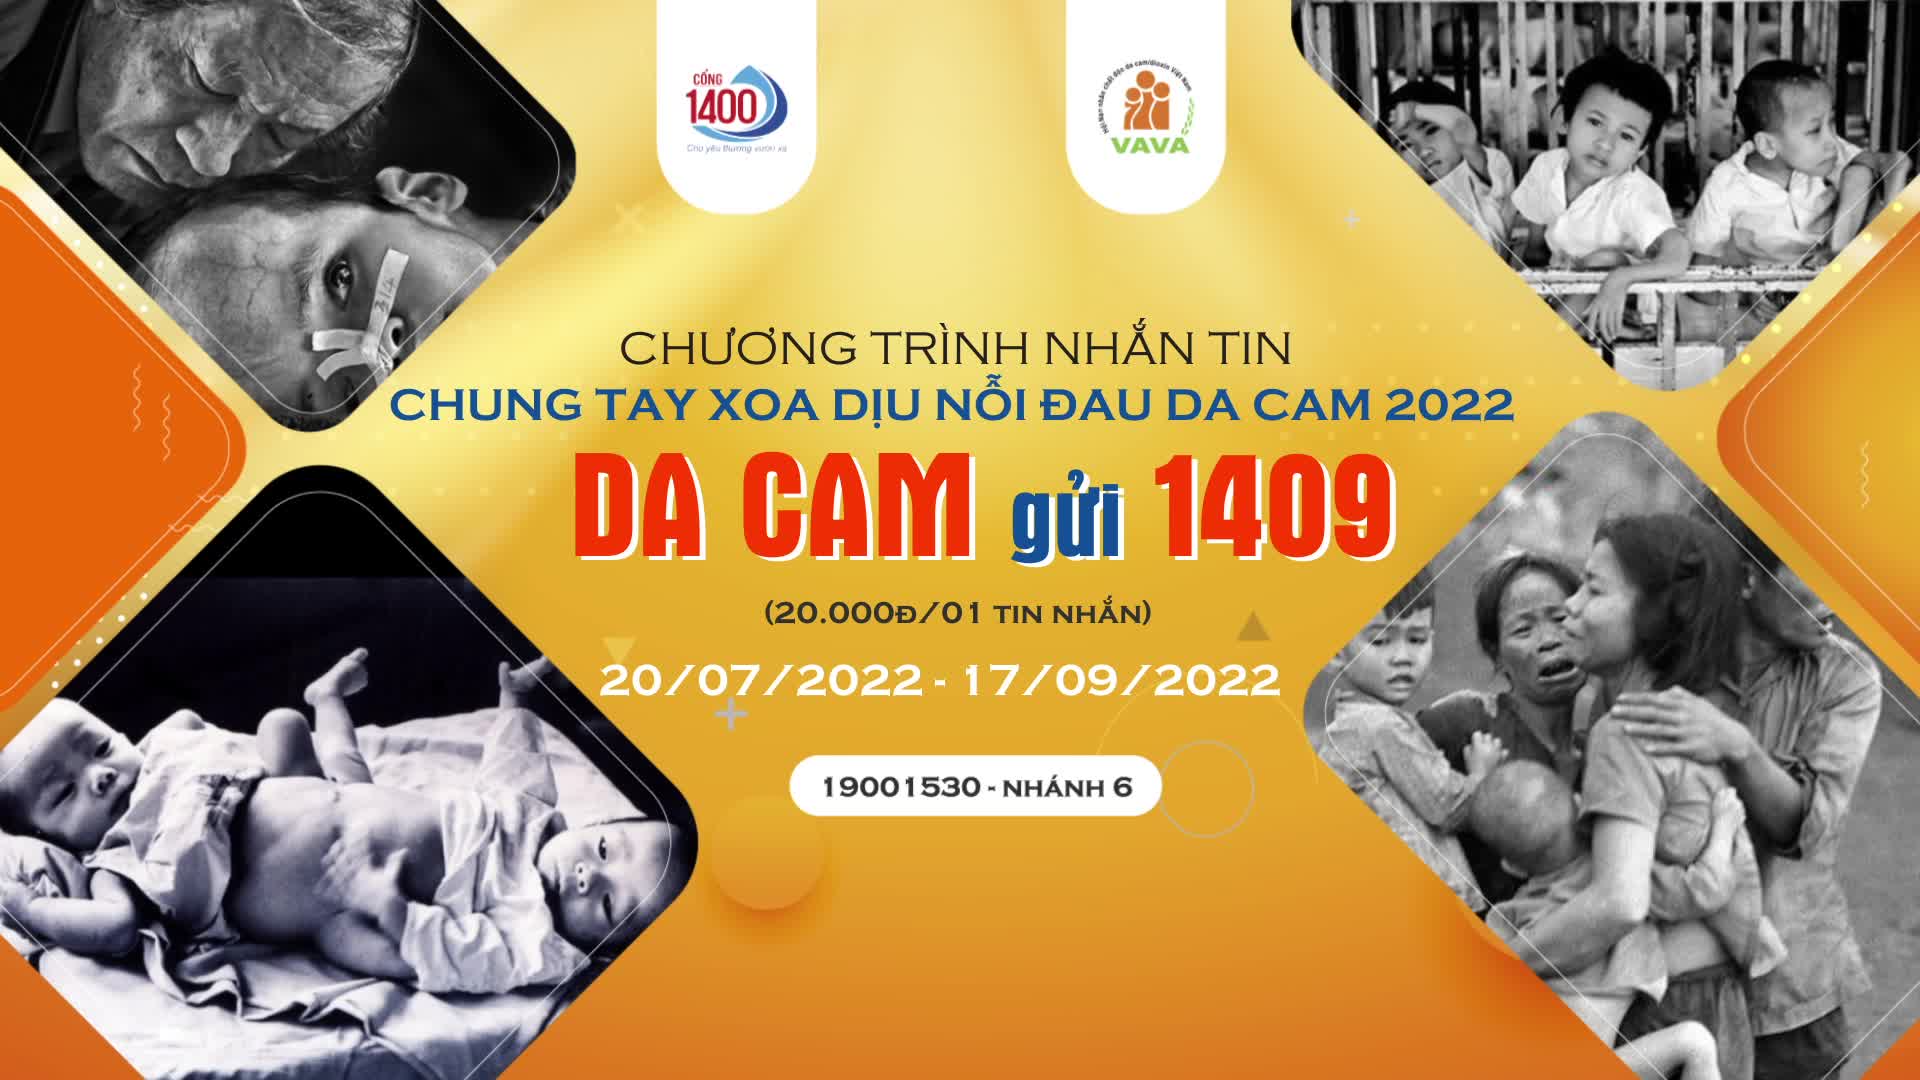 Phát động Chương trình nhắn tin “Chung tay xoa dịu nỗi đau da cam năm 2022”